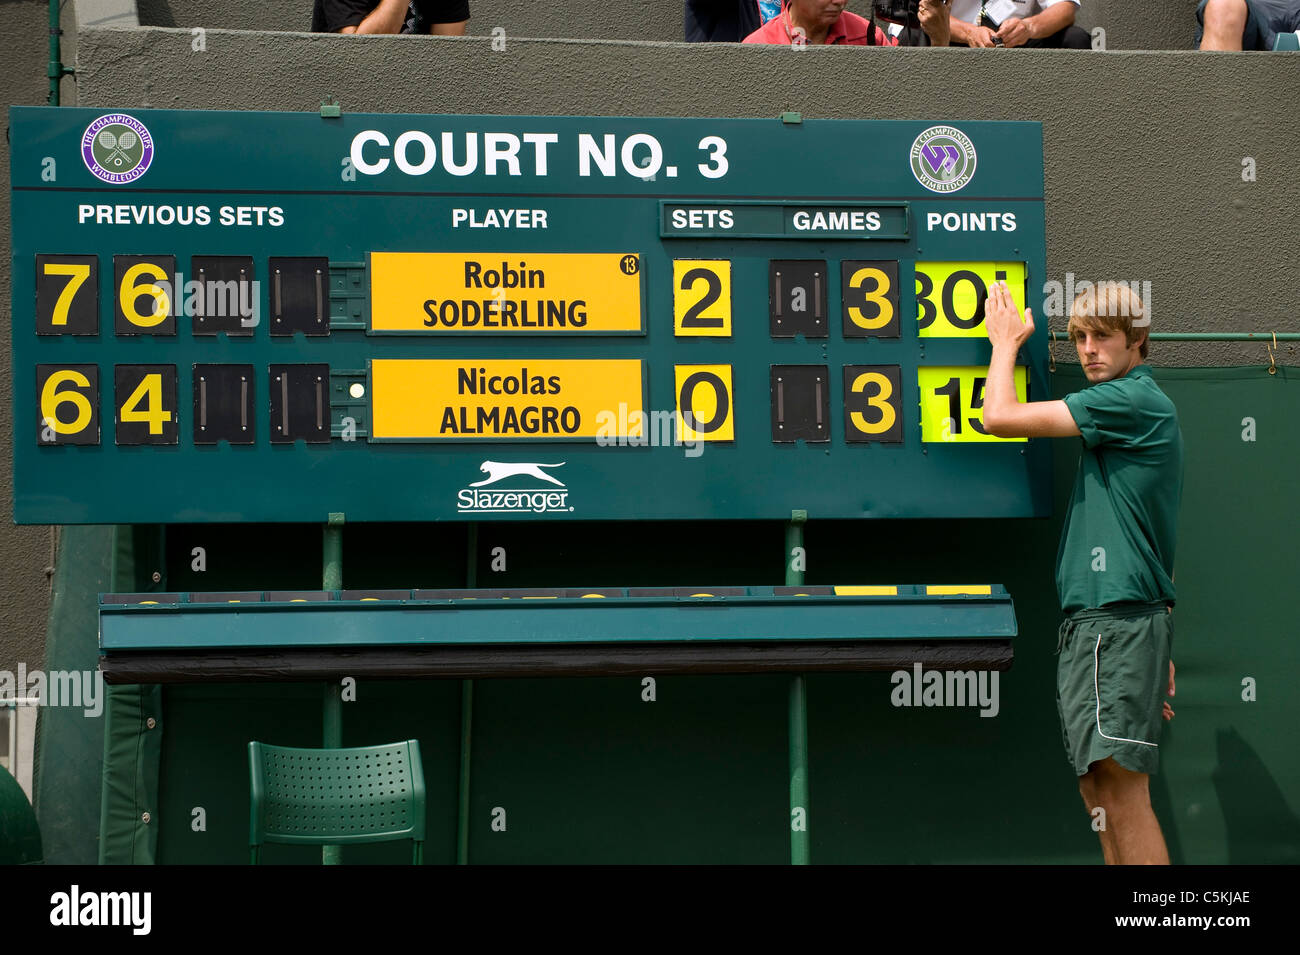 La Cour 3 d'affichage est modifié pendant l'édition 2009 des Championnats de tennis de Wimbledon Banque D'Images